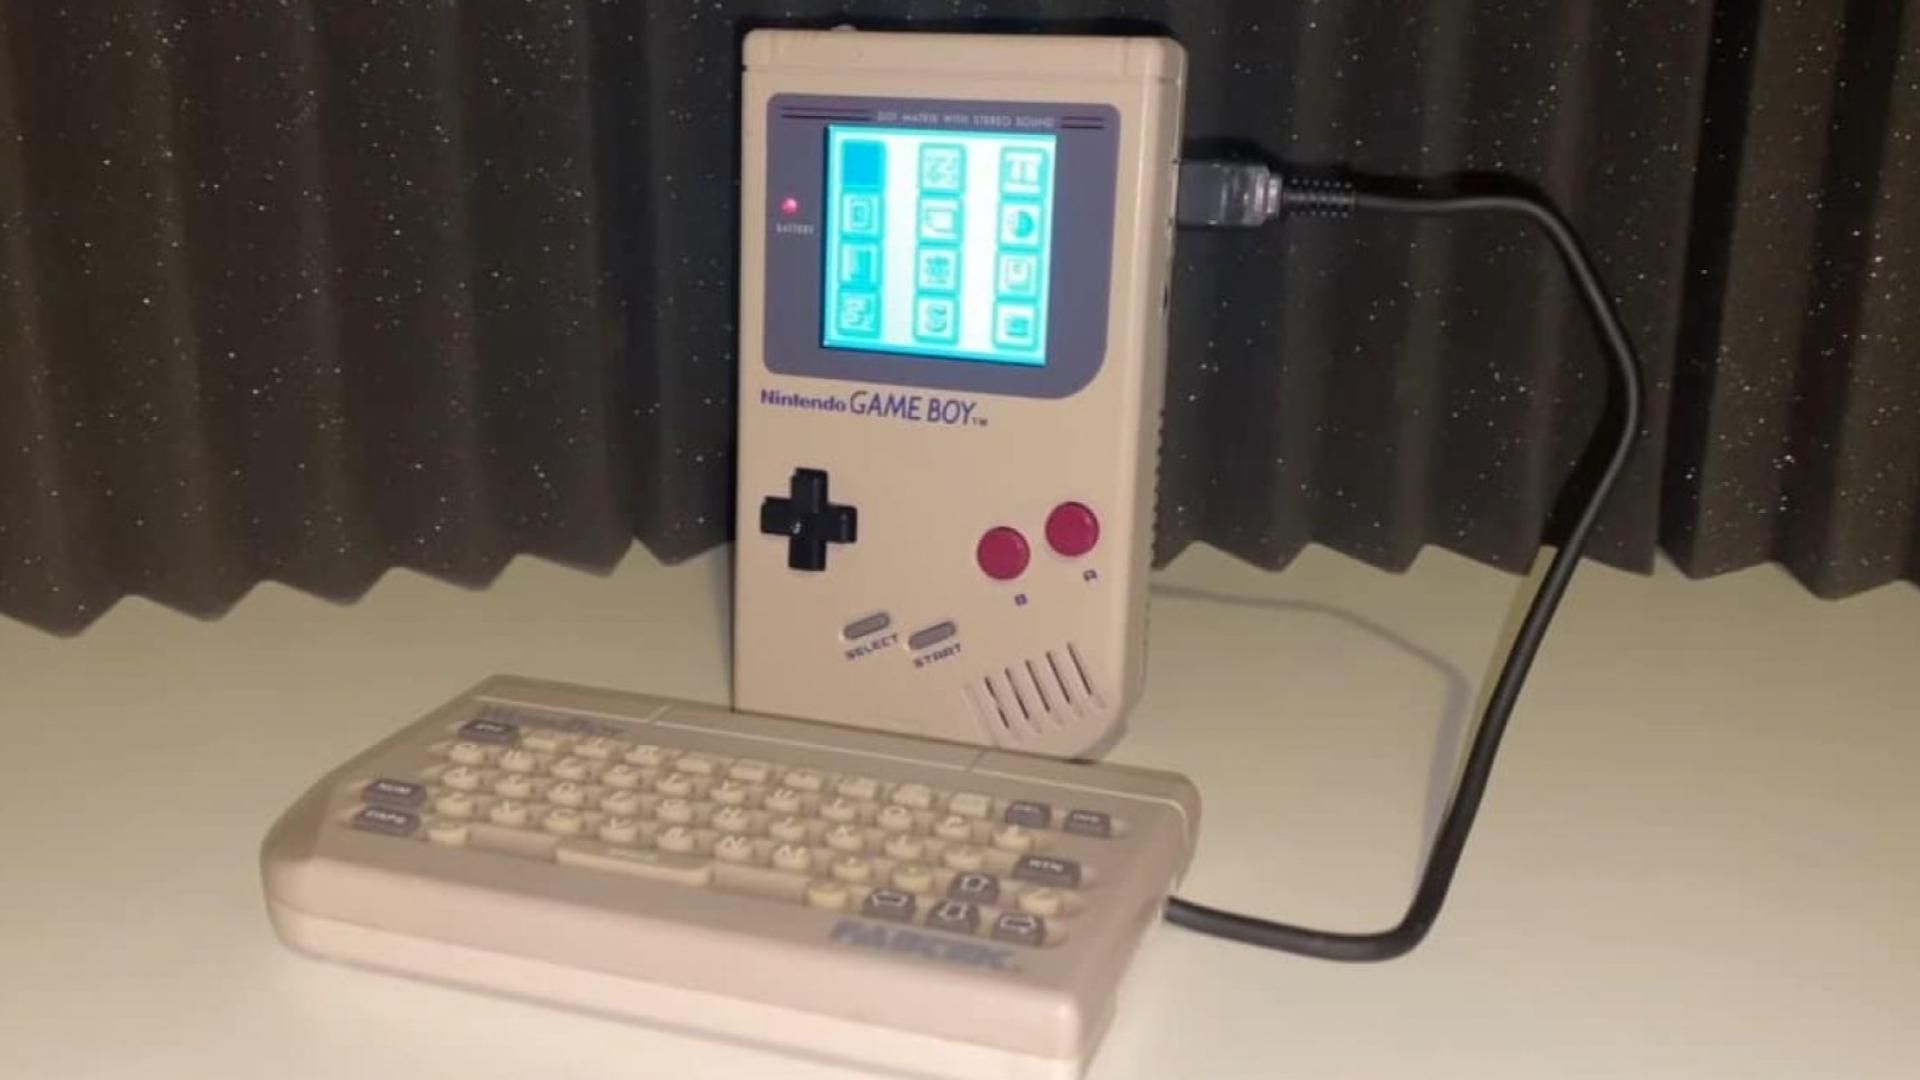 Bất ngờ xuất hiện bàn phím WorkBoy dành cho Game Boy huyền thoại sau 28 năm “mất tích”